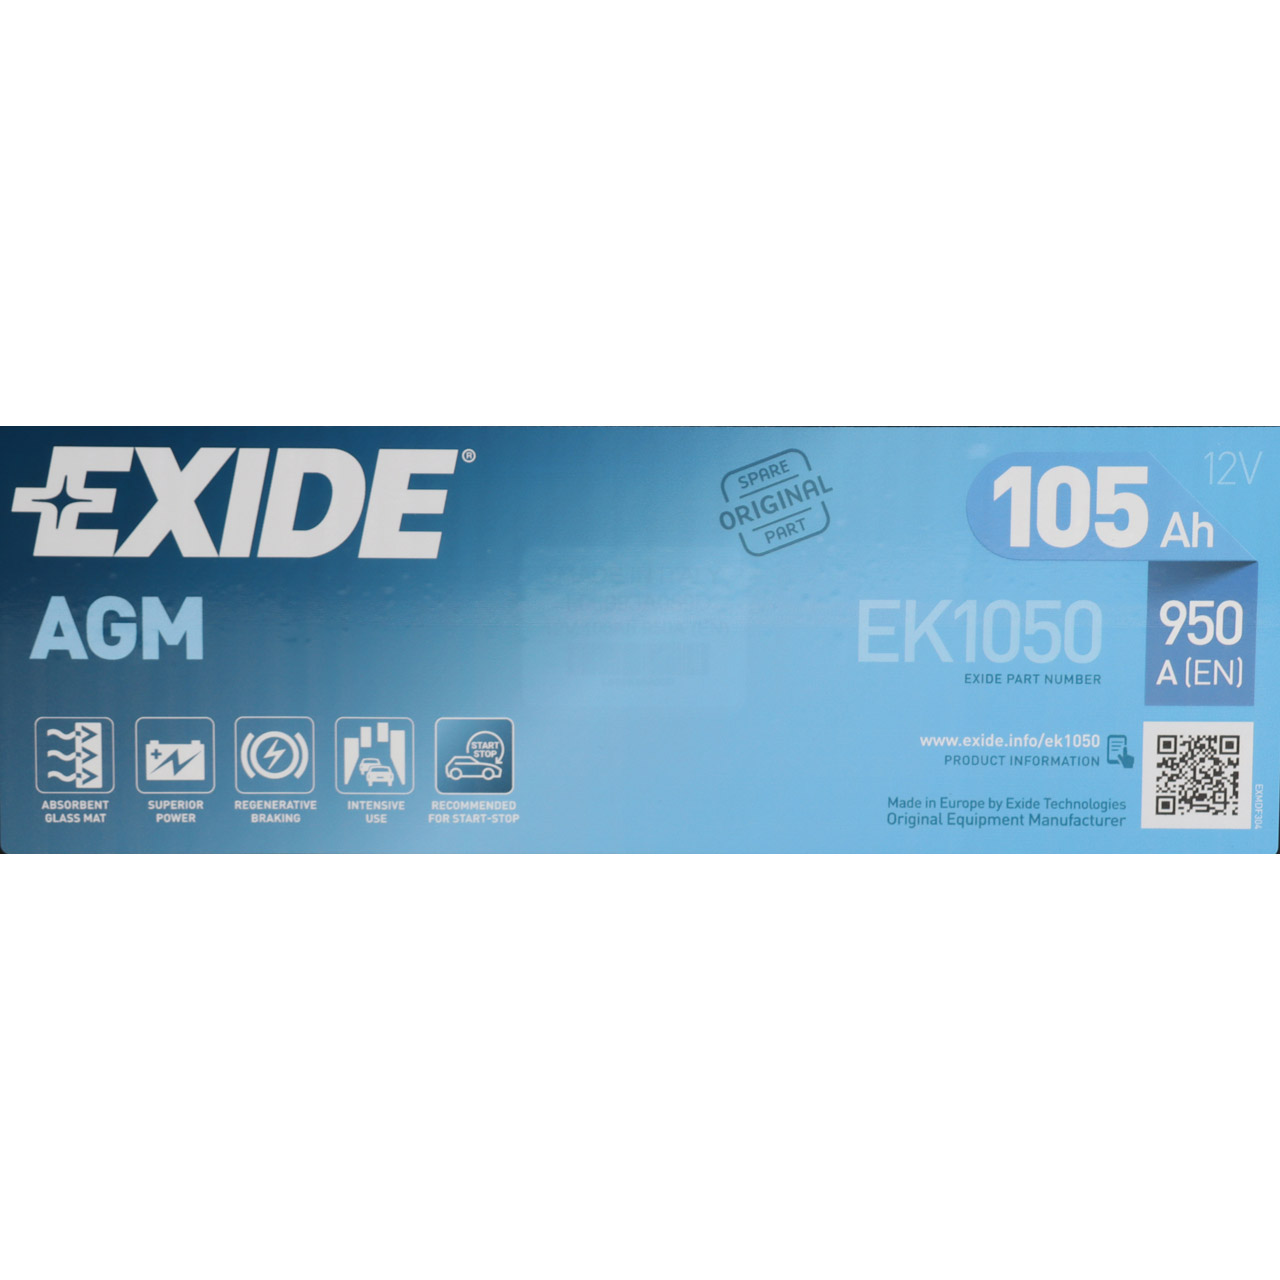 EXIDE EK1050 AGM START-STOP Autobatterie Batterie Starterbatterie 12V 105Ah EN950A